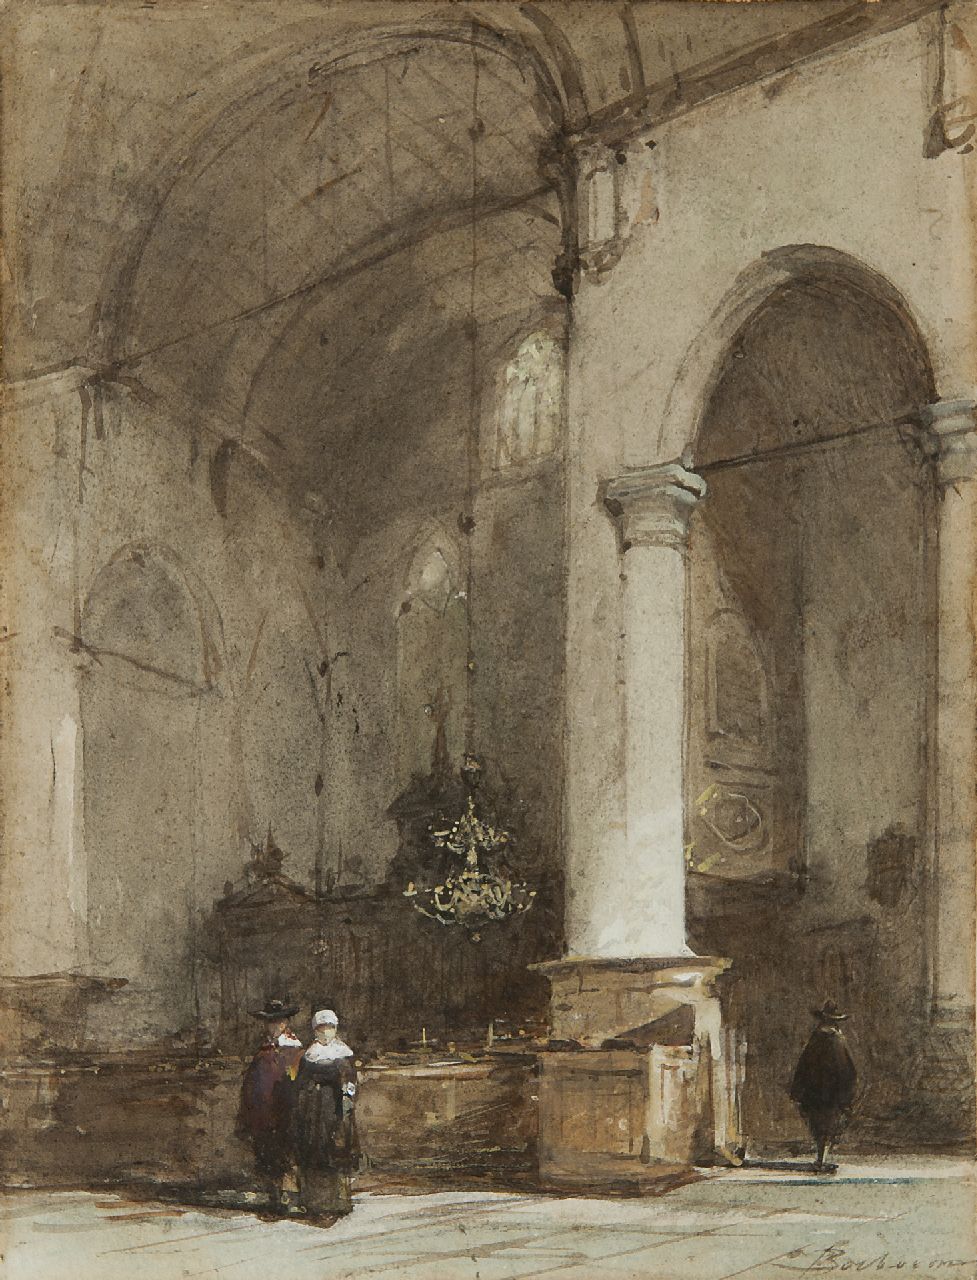 Bosboom J.  | Johannes Bosboom, Interieur van de Grote Kerk te Maassluis, aquarel op papier 28,0 x 21,5 cm, gesigneerd rechtsonder